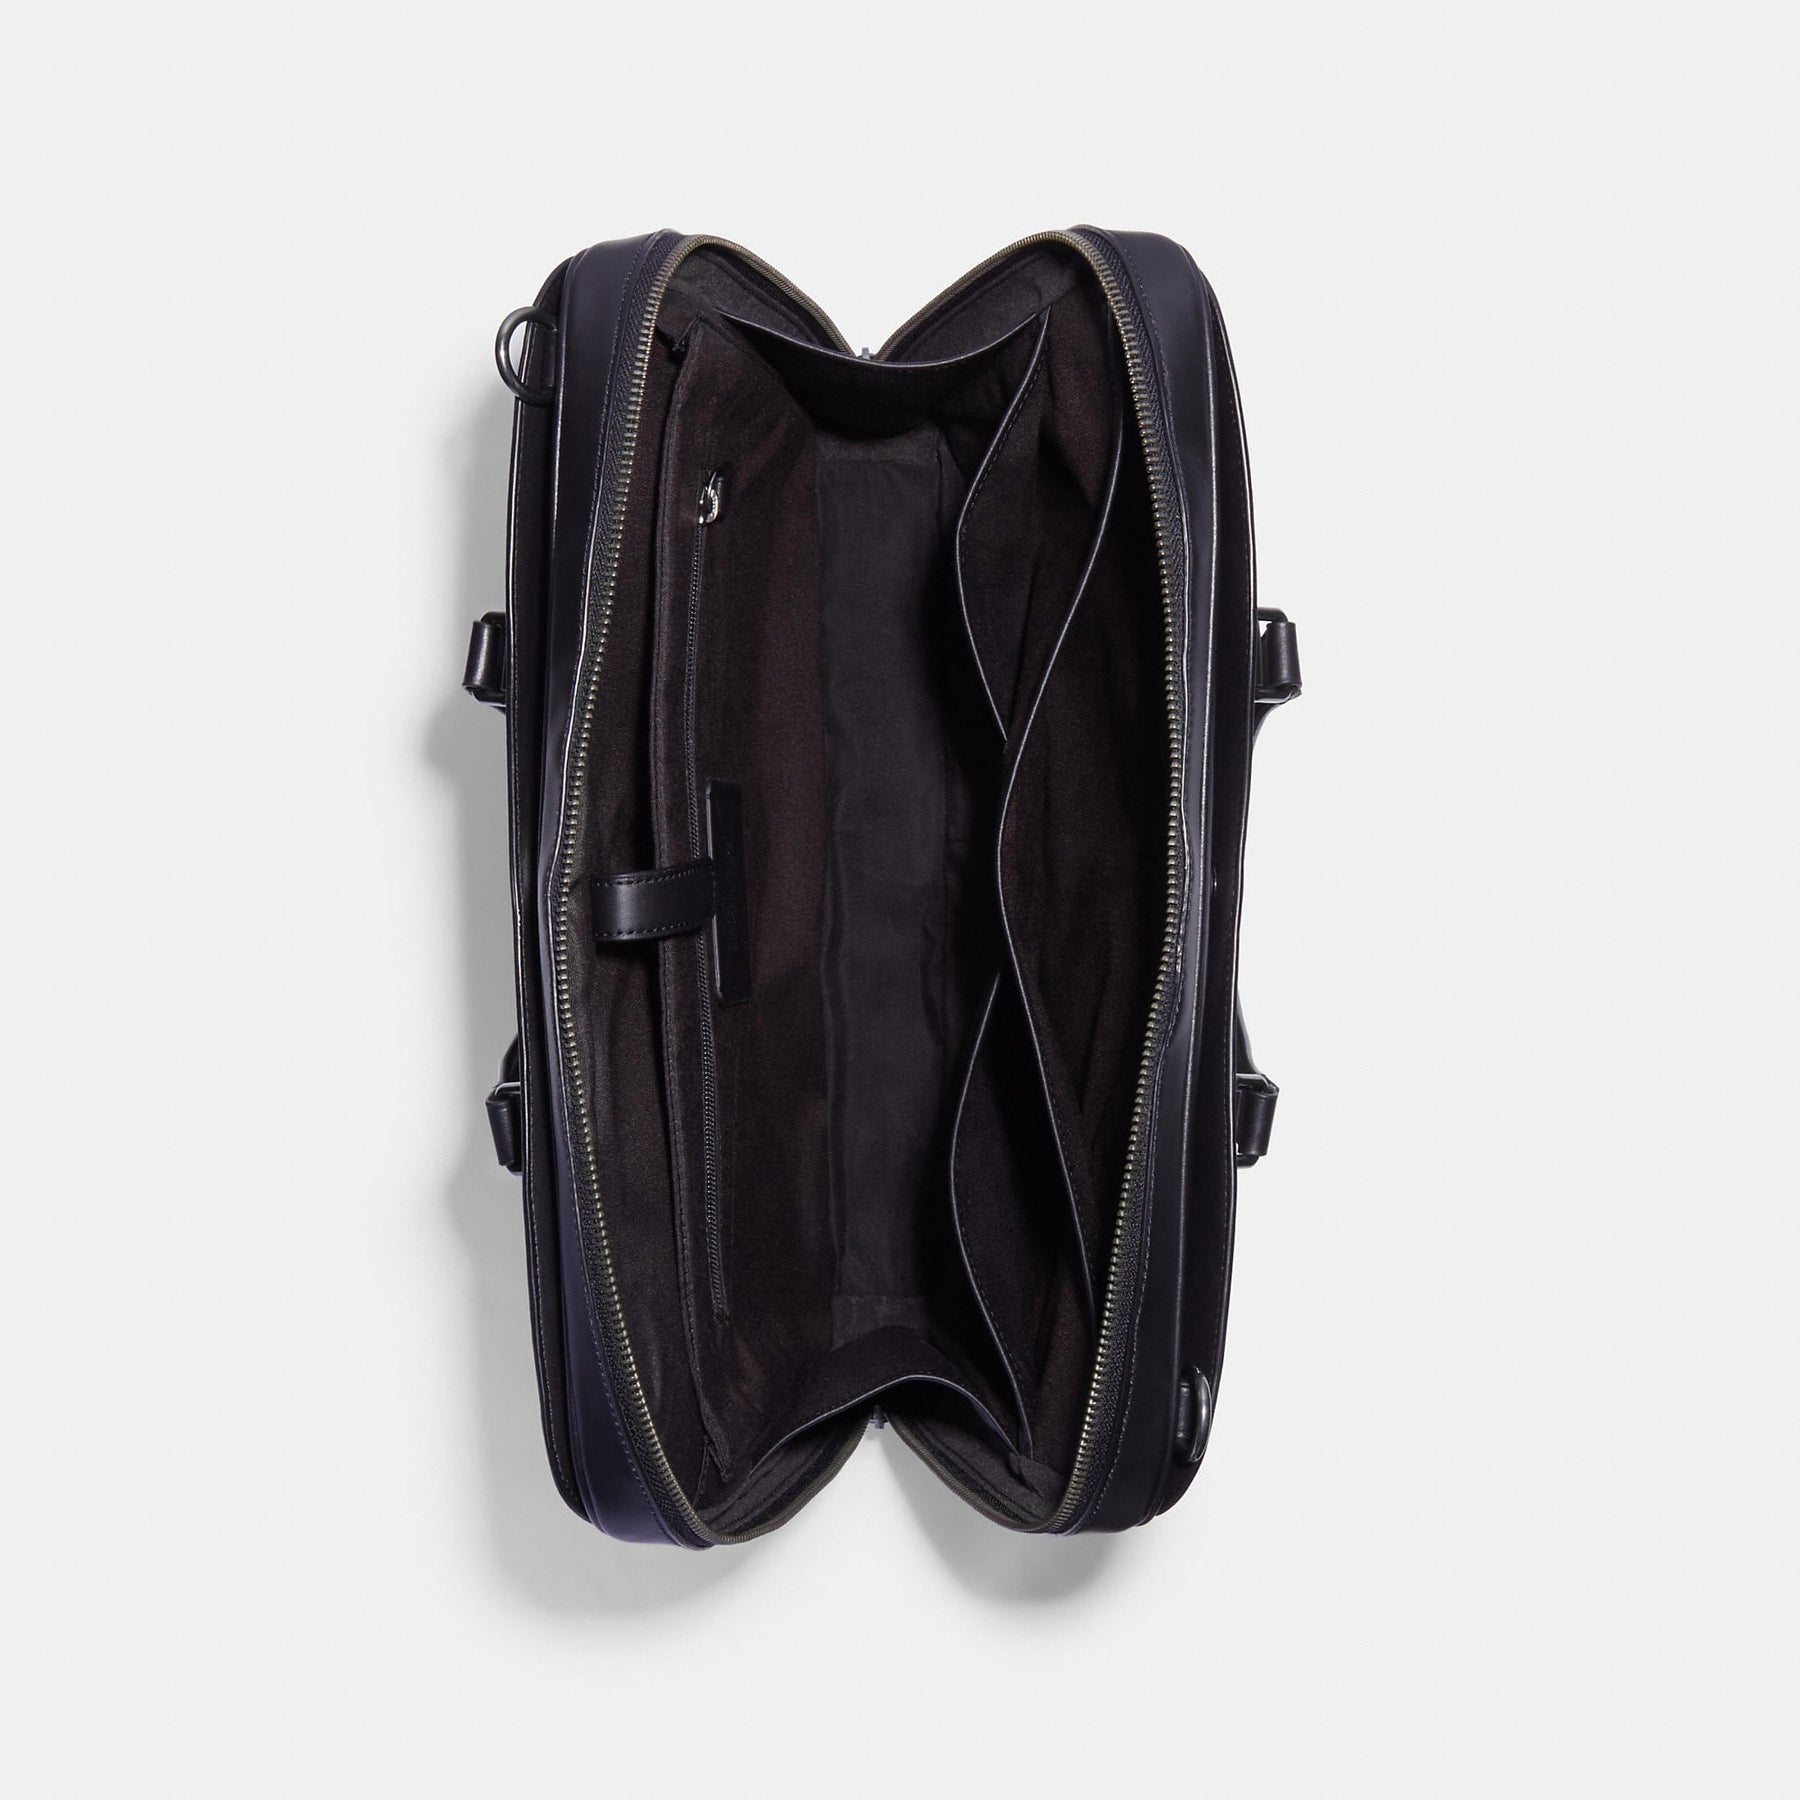 NWT! Coach Grey Black Leather Slim Laptop Briefcase Bag F85709